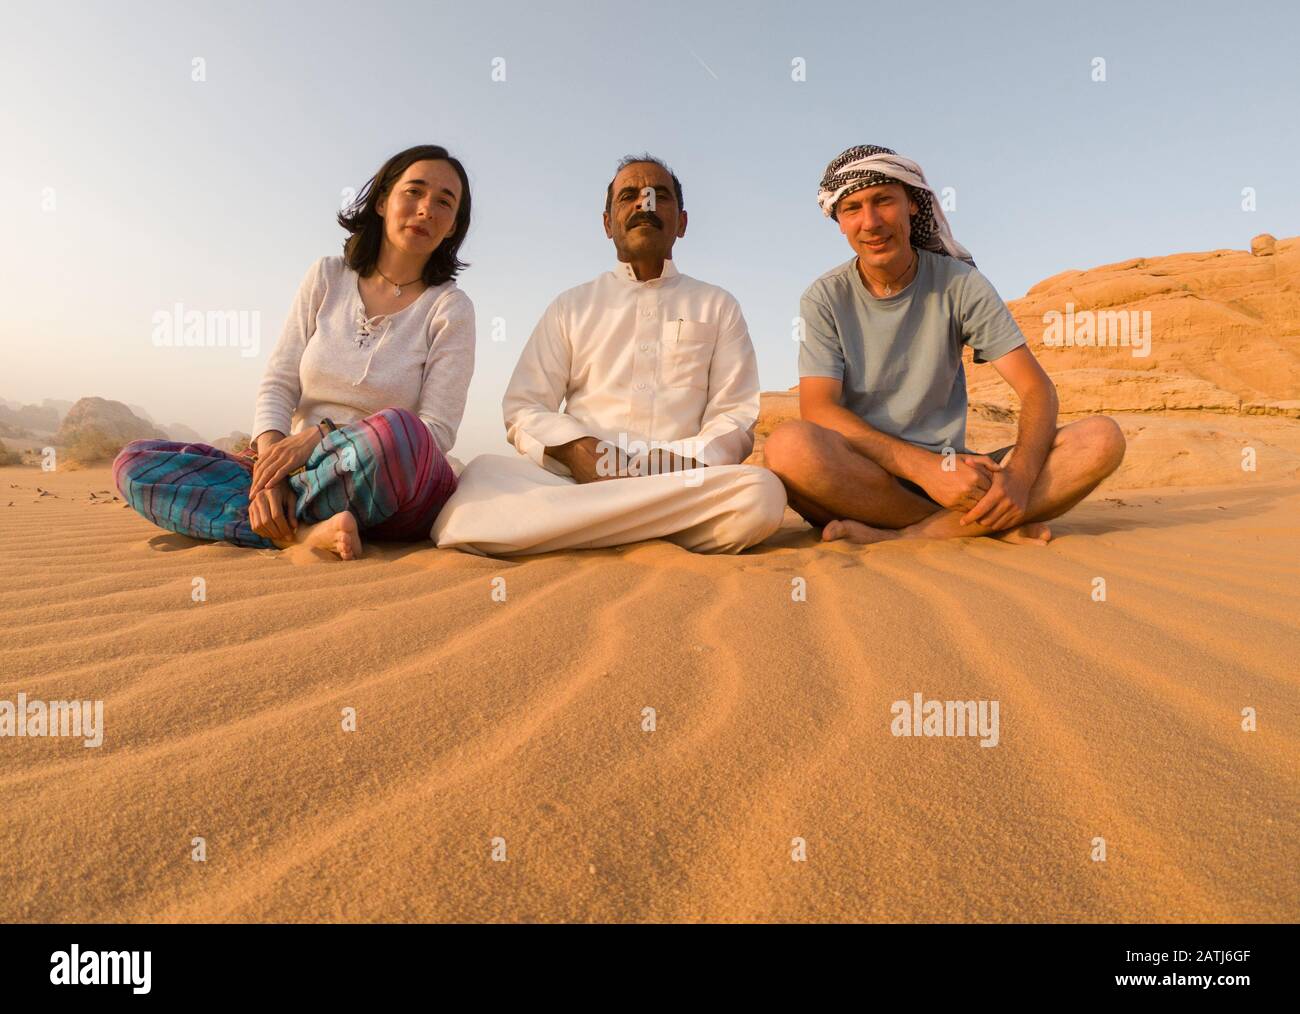 Wadi RUM, JORDANIE - 19 MAI 2018 : touristes posant avec leur guide bédouin  dans le désert de Wadi Rum. Beaucoup de bédouins travaillent maintenant  comme guides à la place o Photo Stock - Alamy